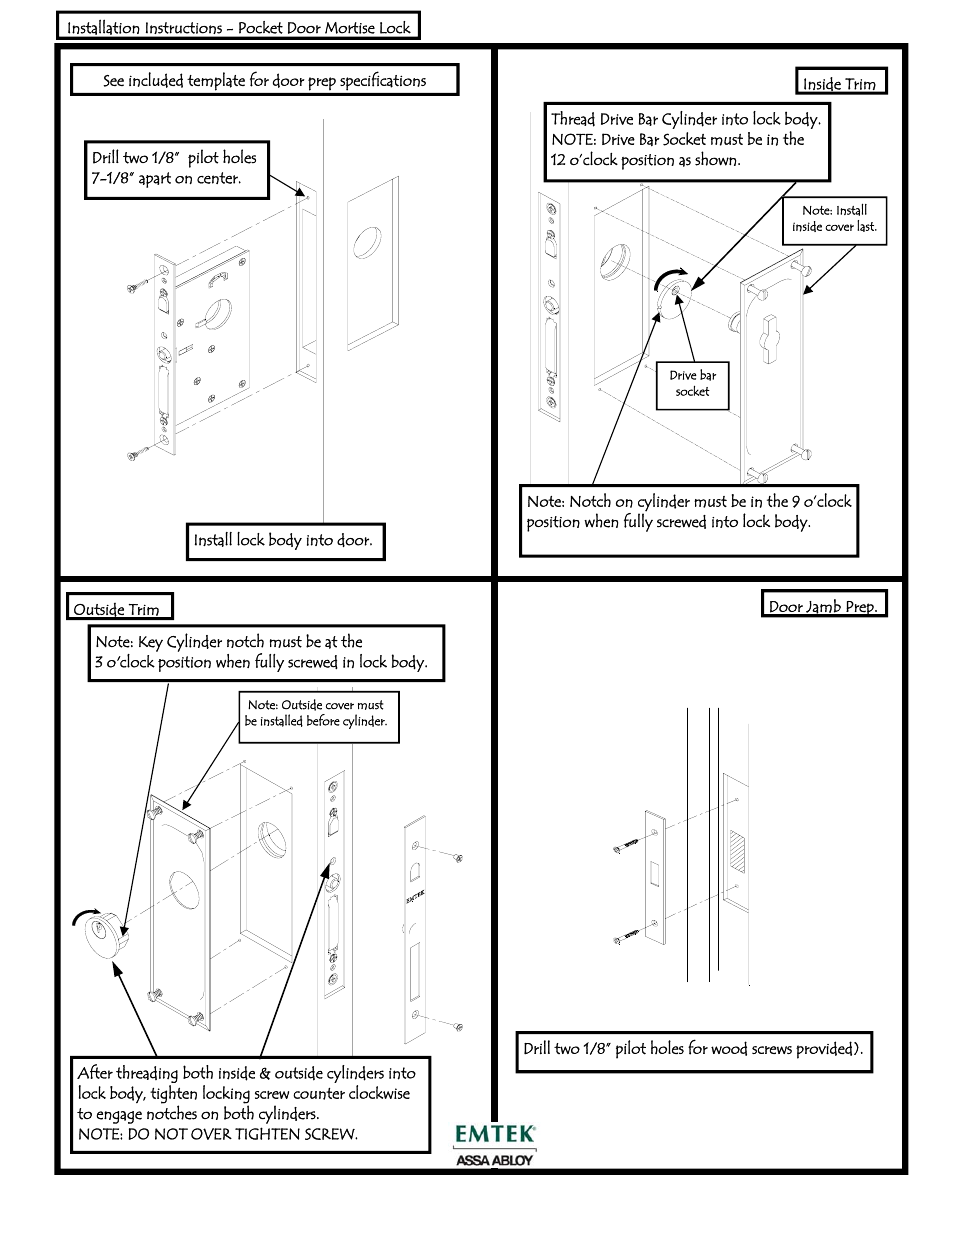 Emtek Door Mortise LockKeyed User Manual 1 page